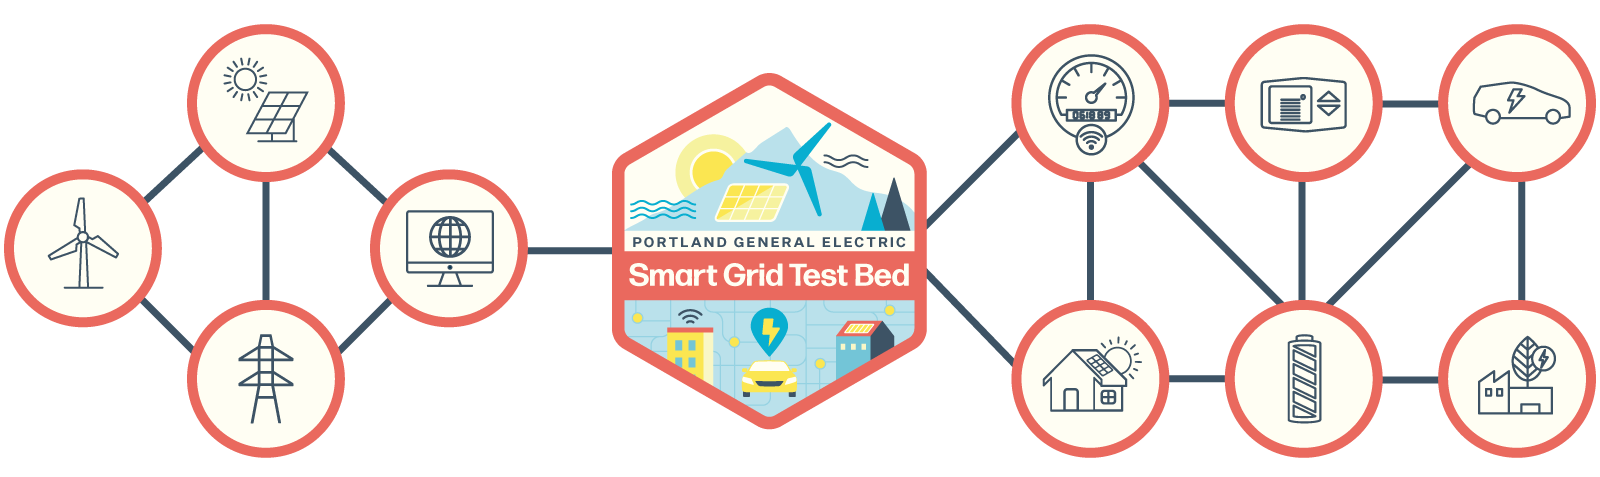 Smart Gird Test Bed badge